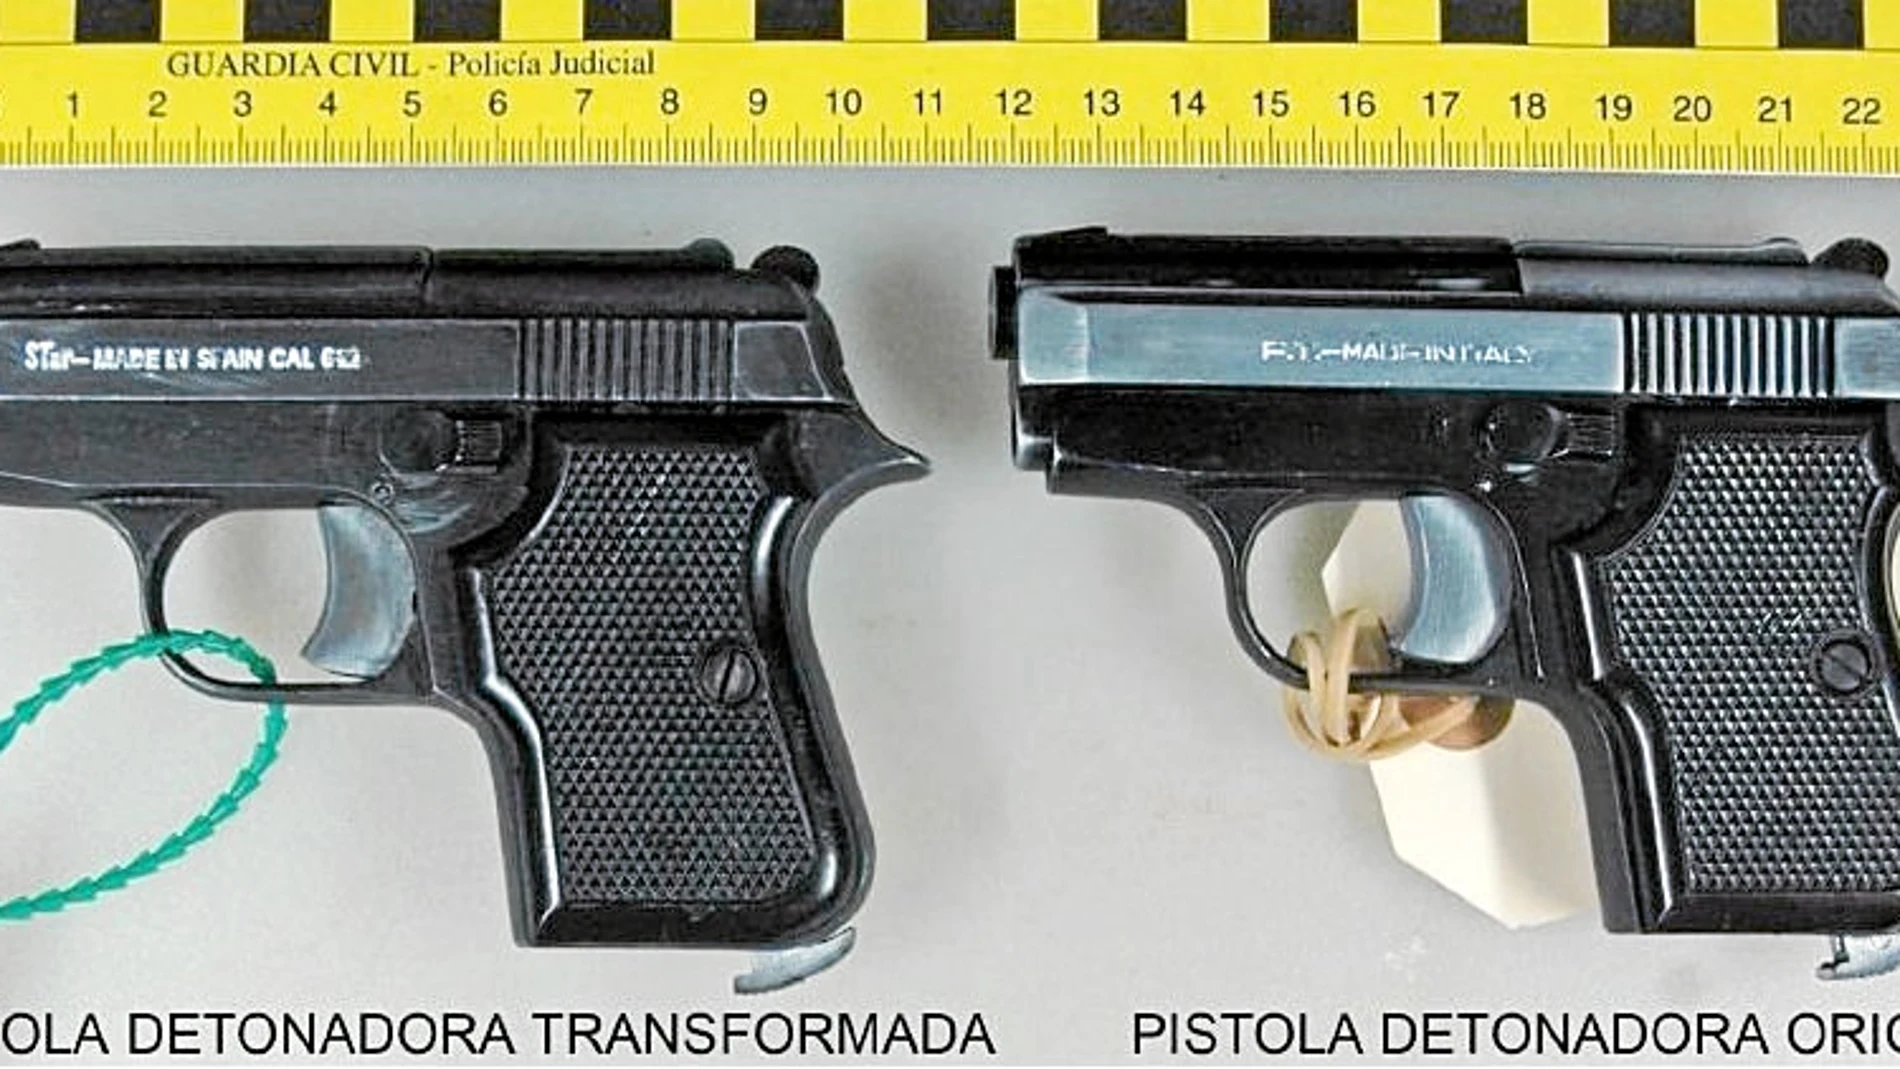 A la derecha, el arma original y a la izquierda, la transformada. A simple vista son idénticas